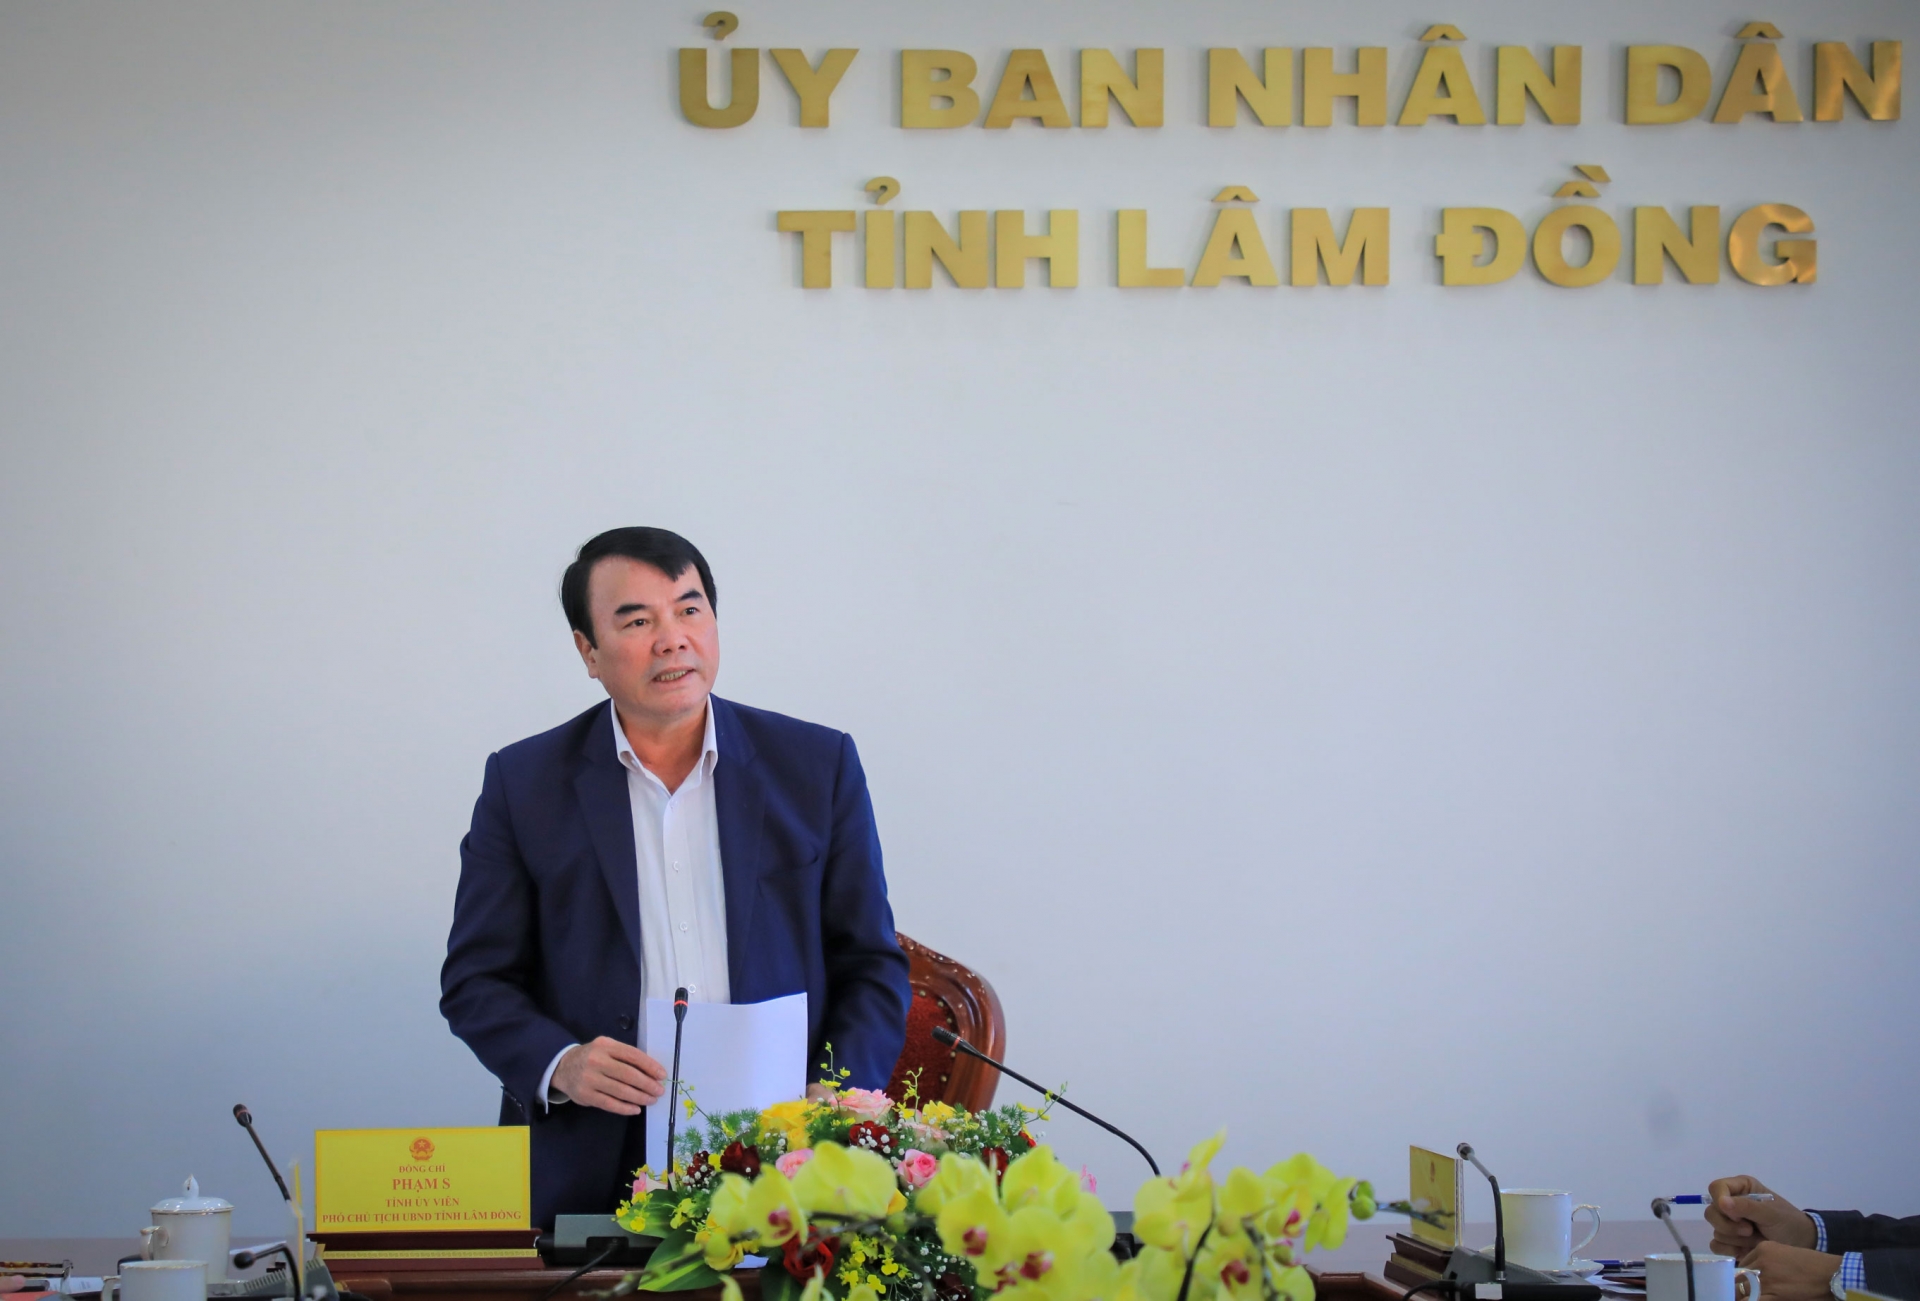 
Phó Chủ tịch UBND tỉnh Lâm Đồng Phạm S chỉ đạo tại buổi làm việc
